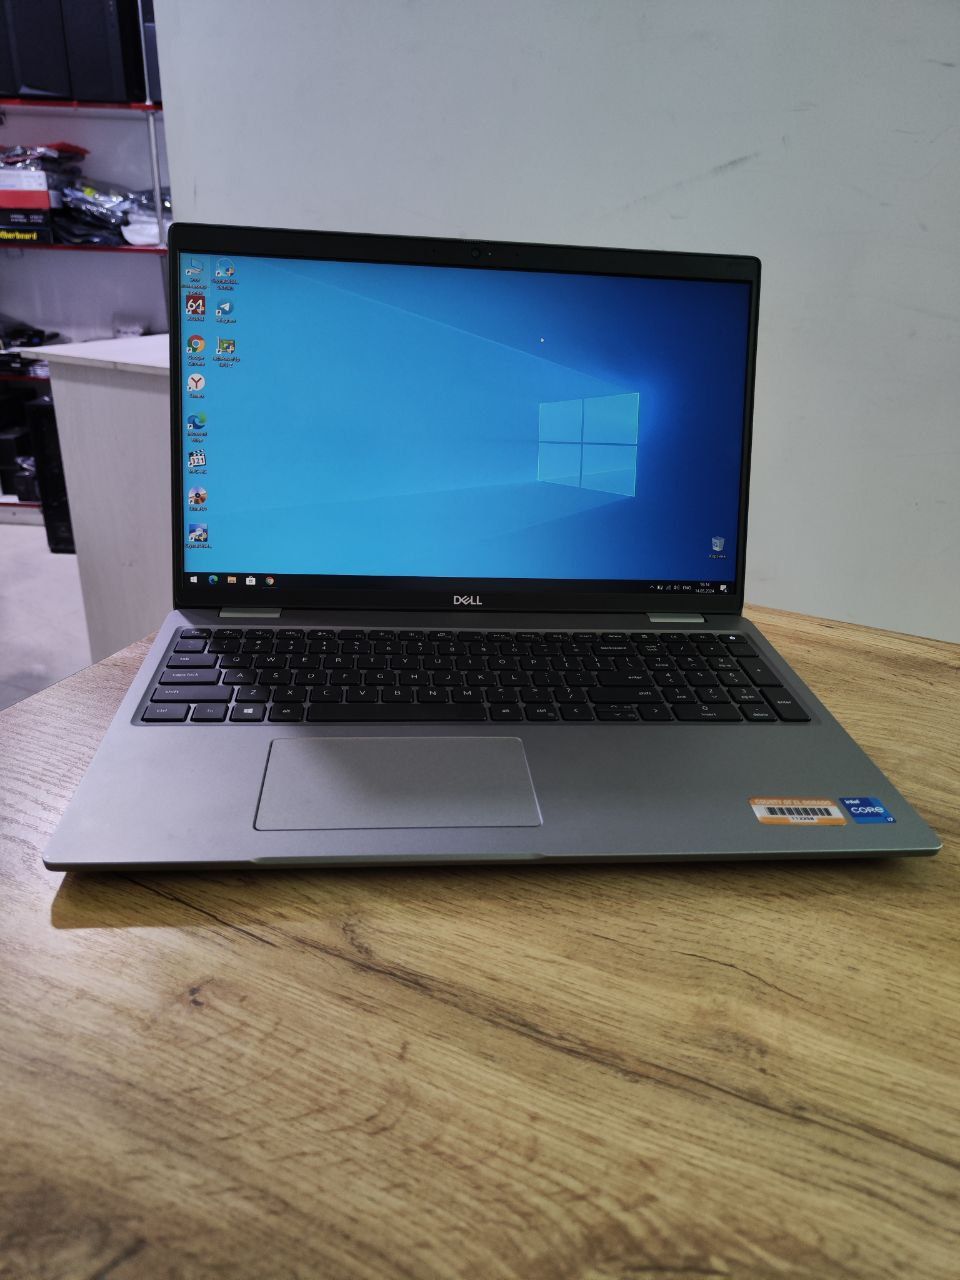 Ноутбук Dell 3560
Windows 10 pro
Intel R core i7-1165G7
Озу 16 gb ddr4